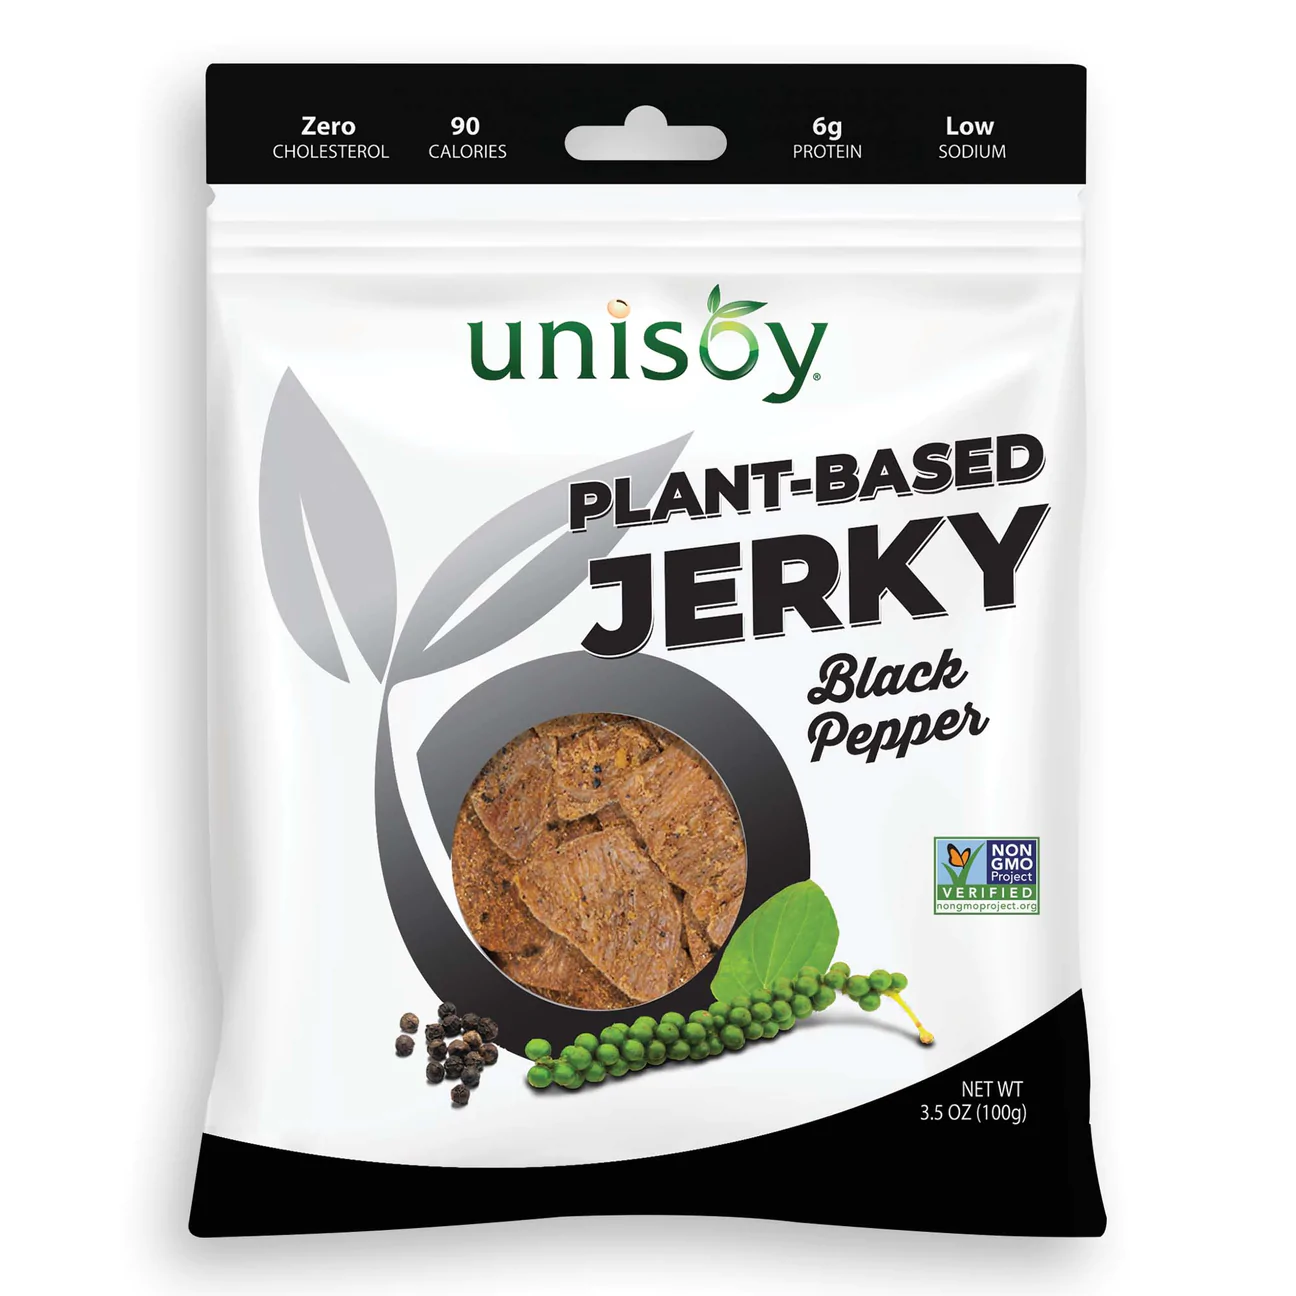 Unisoy Plant-based Jerky - Black Pepper 2 innerpacks per case 3.5 oz